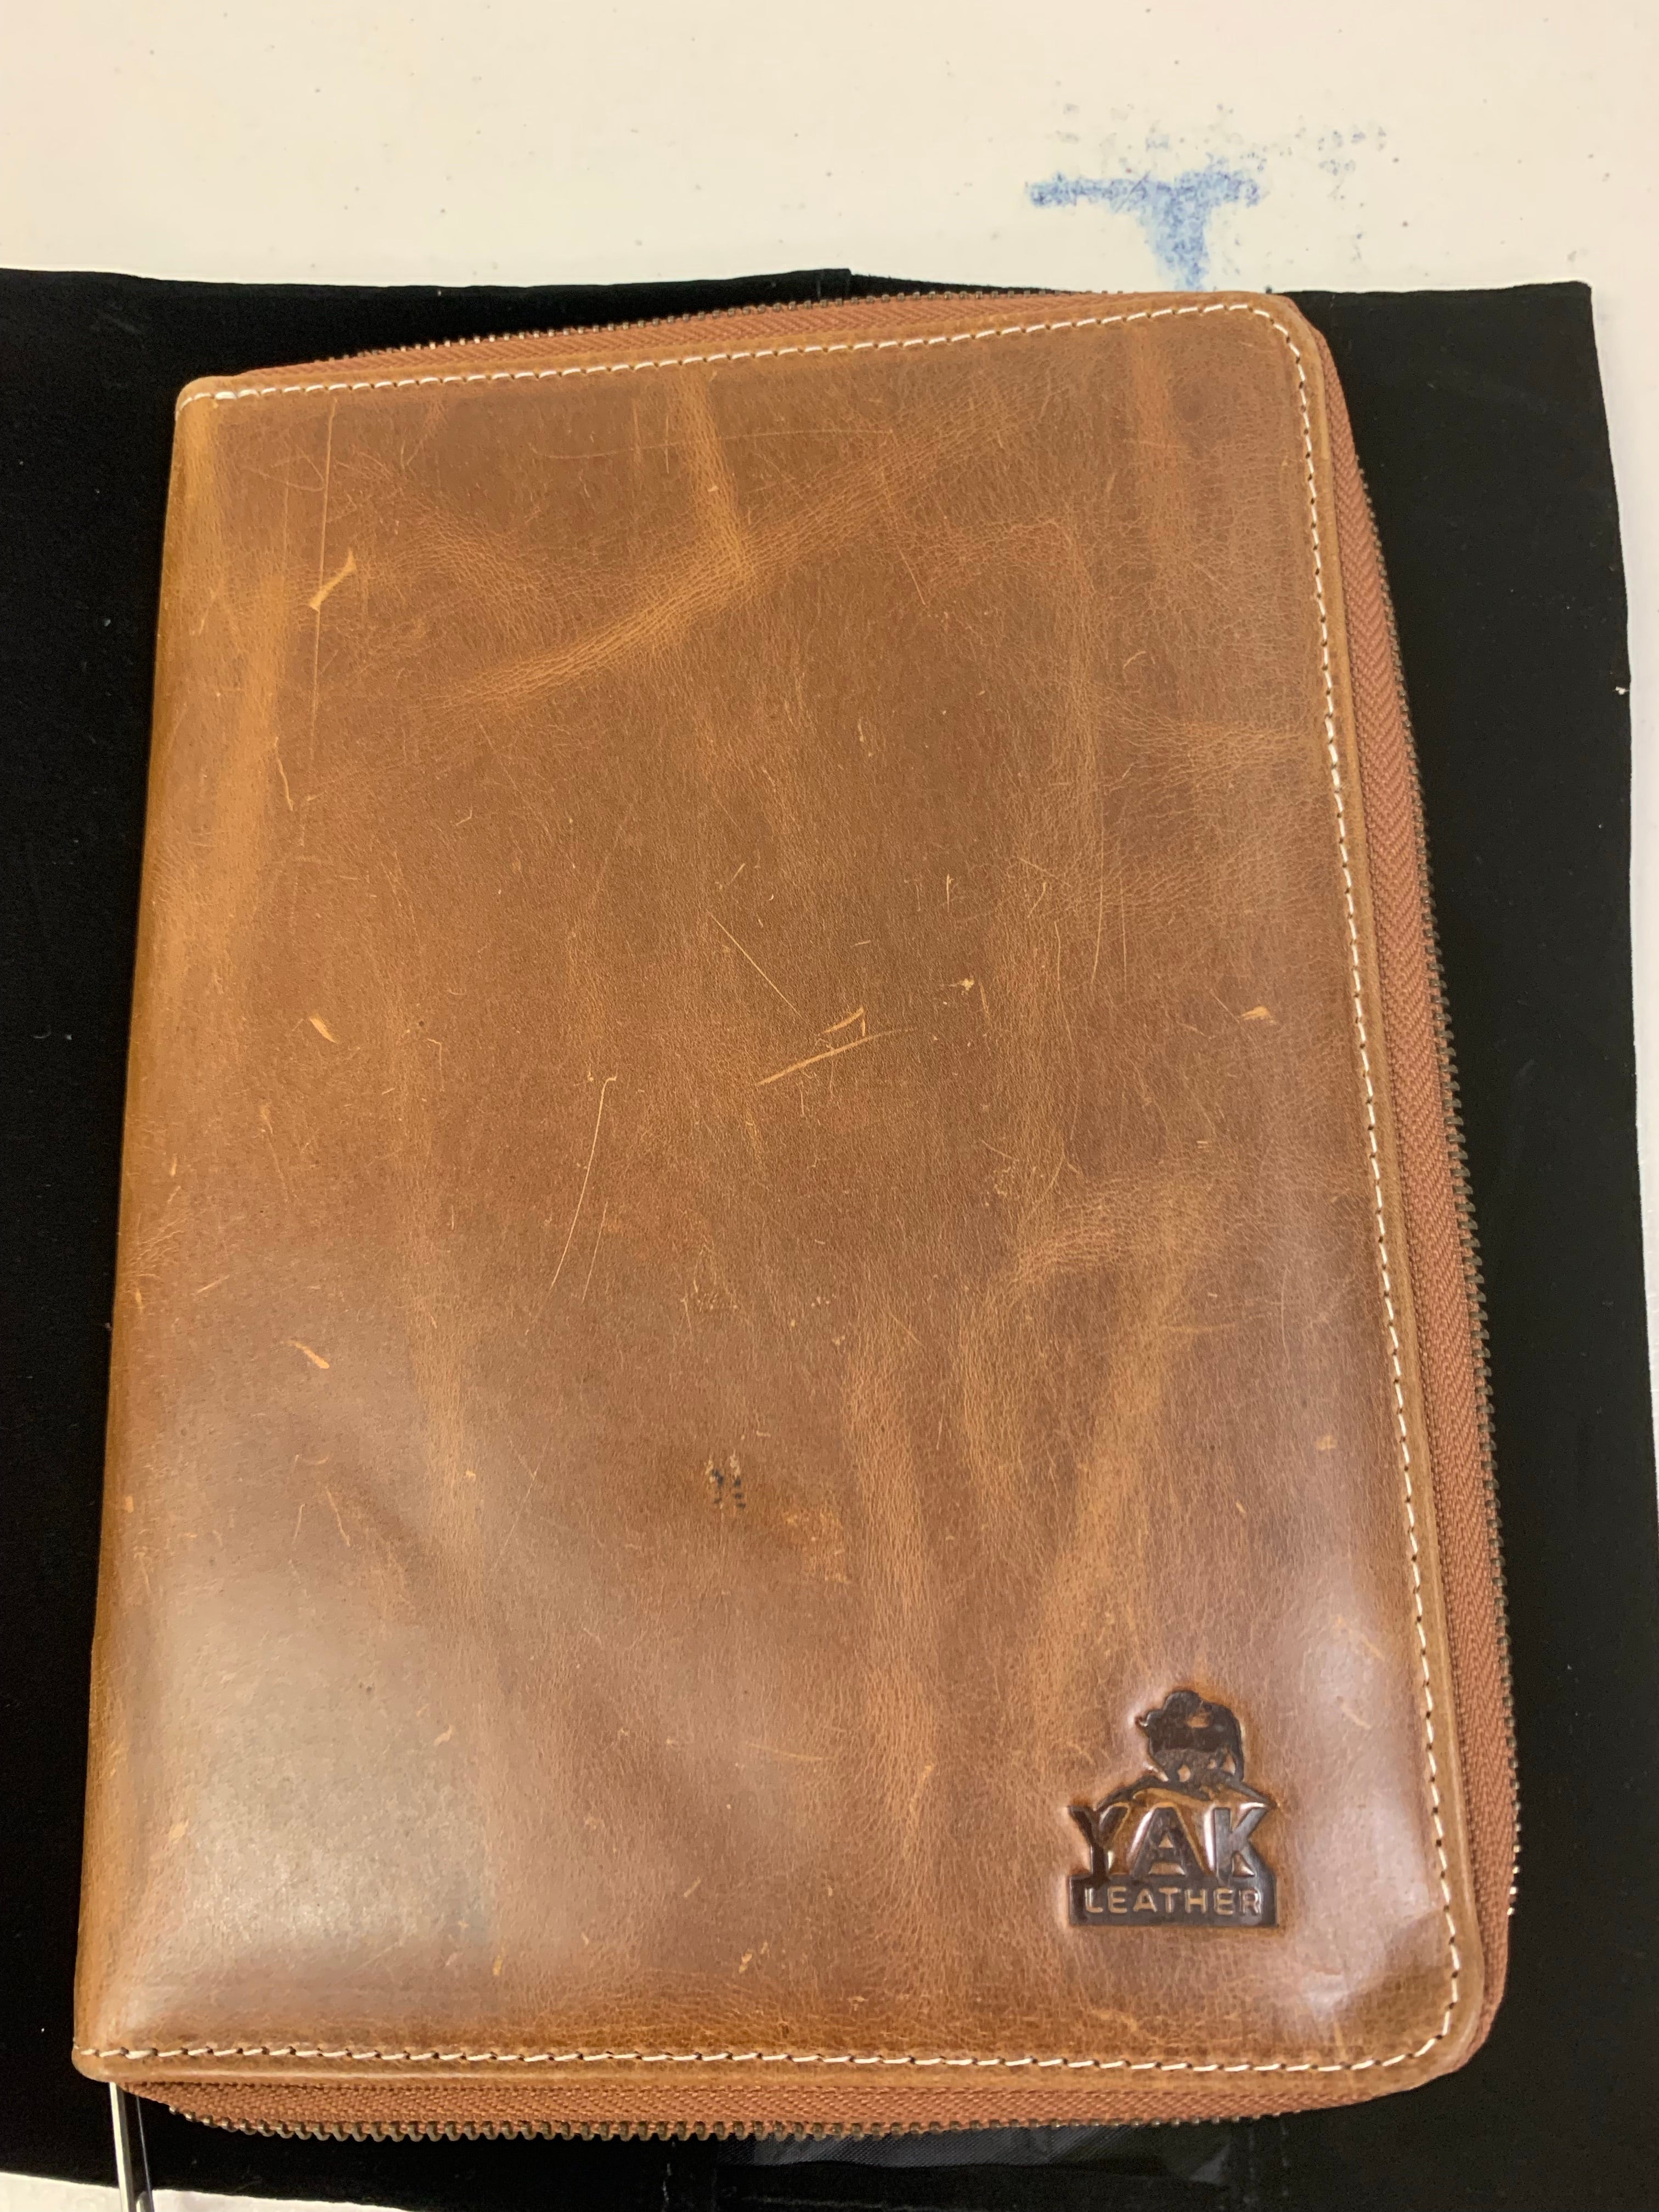 Pen Boutique Yak Leather A5 Zipped Folio - Crazy Horse-Tan-Pen Boutique Ltd